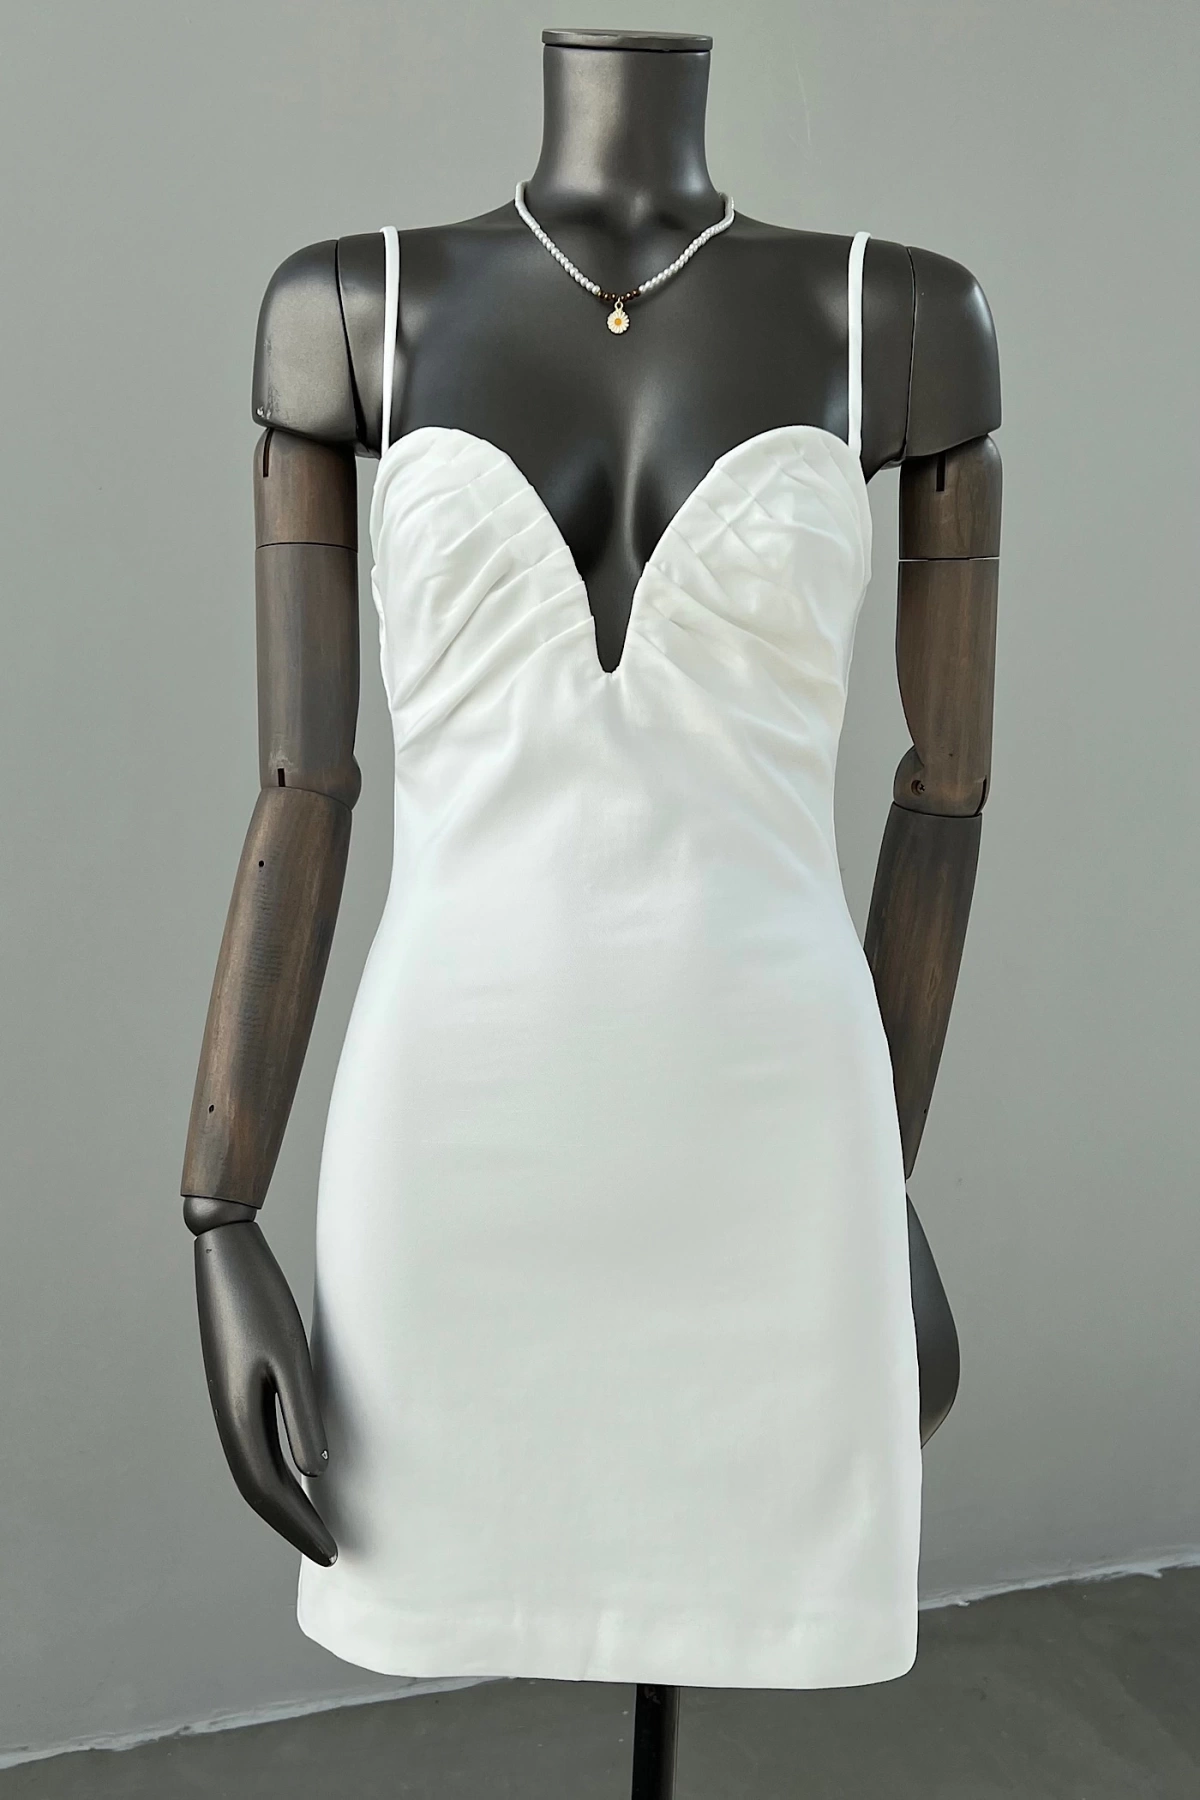 Chest Underwire Bride Dress